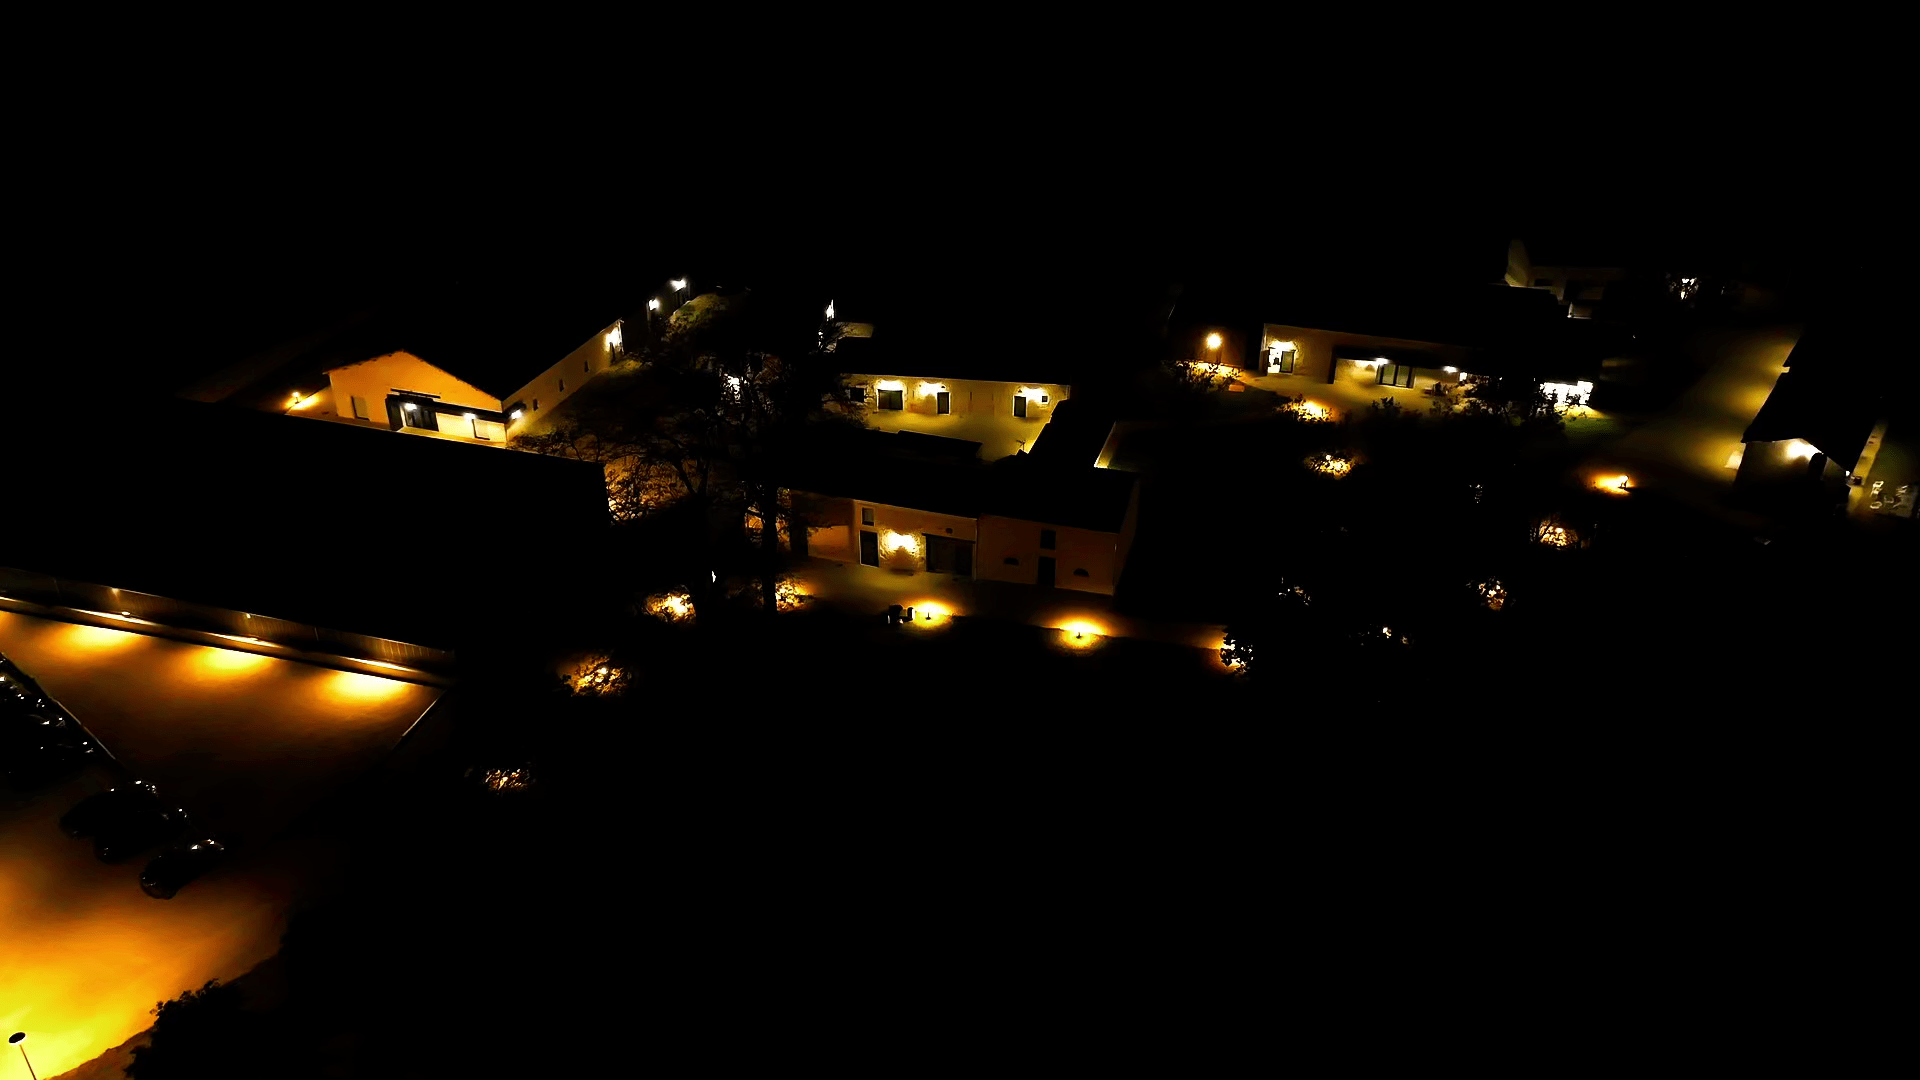 Le Domaine la nuit